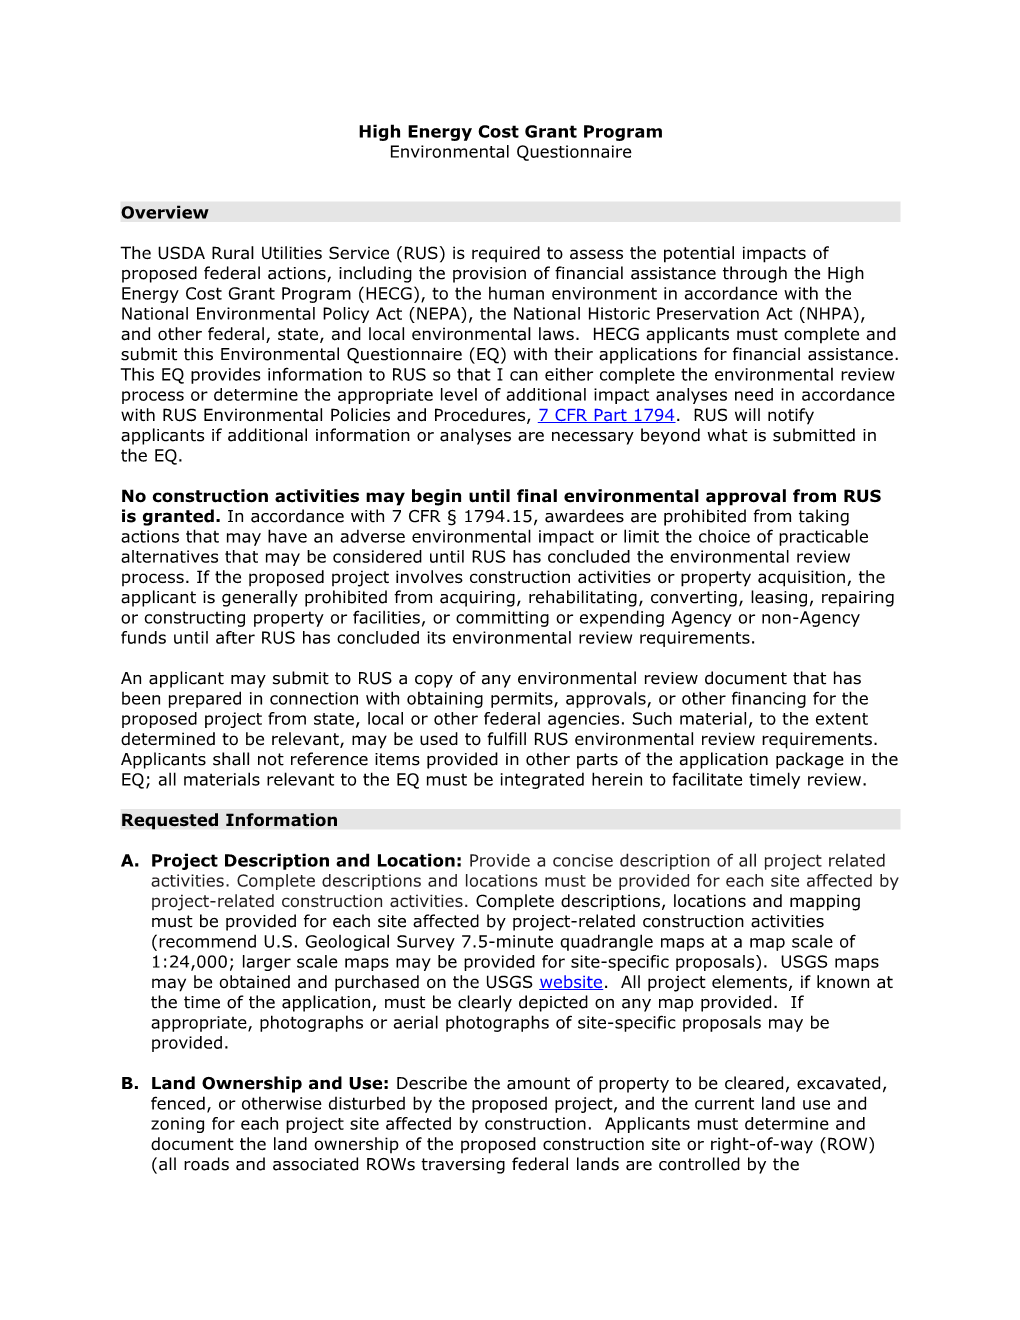 BTOP/BIP Environmental Questionnaire